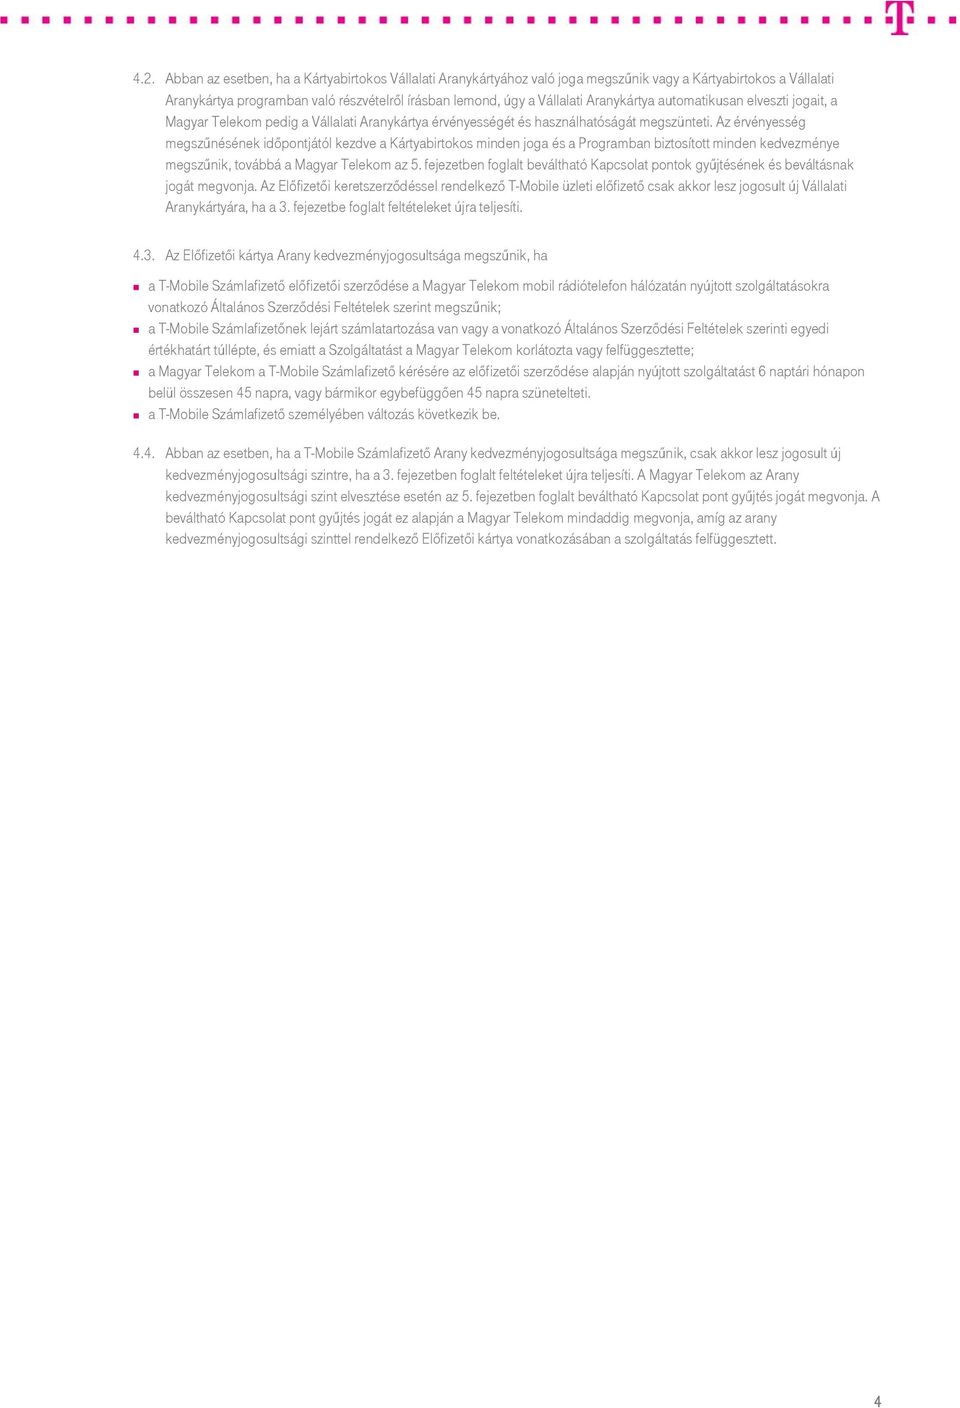 Vállalati Aranykártya programszabályzat - PDF Ingyenes letöltés